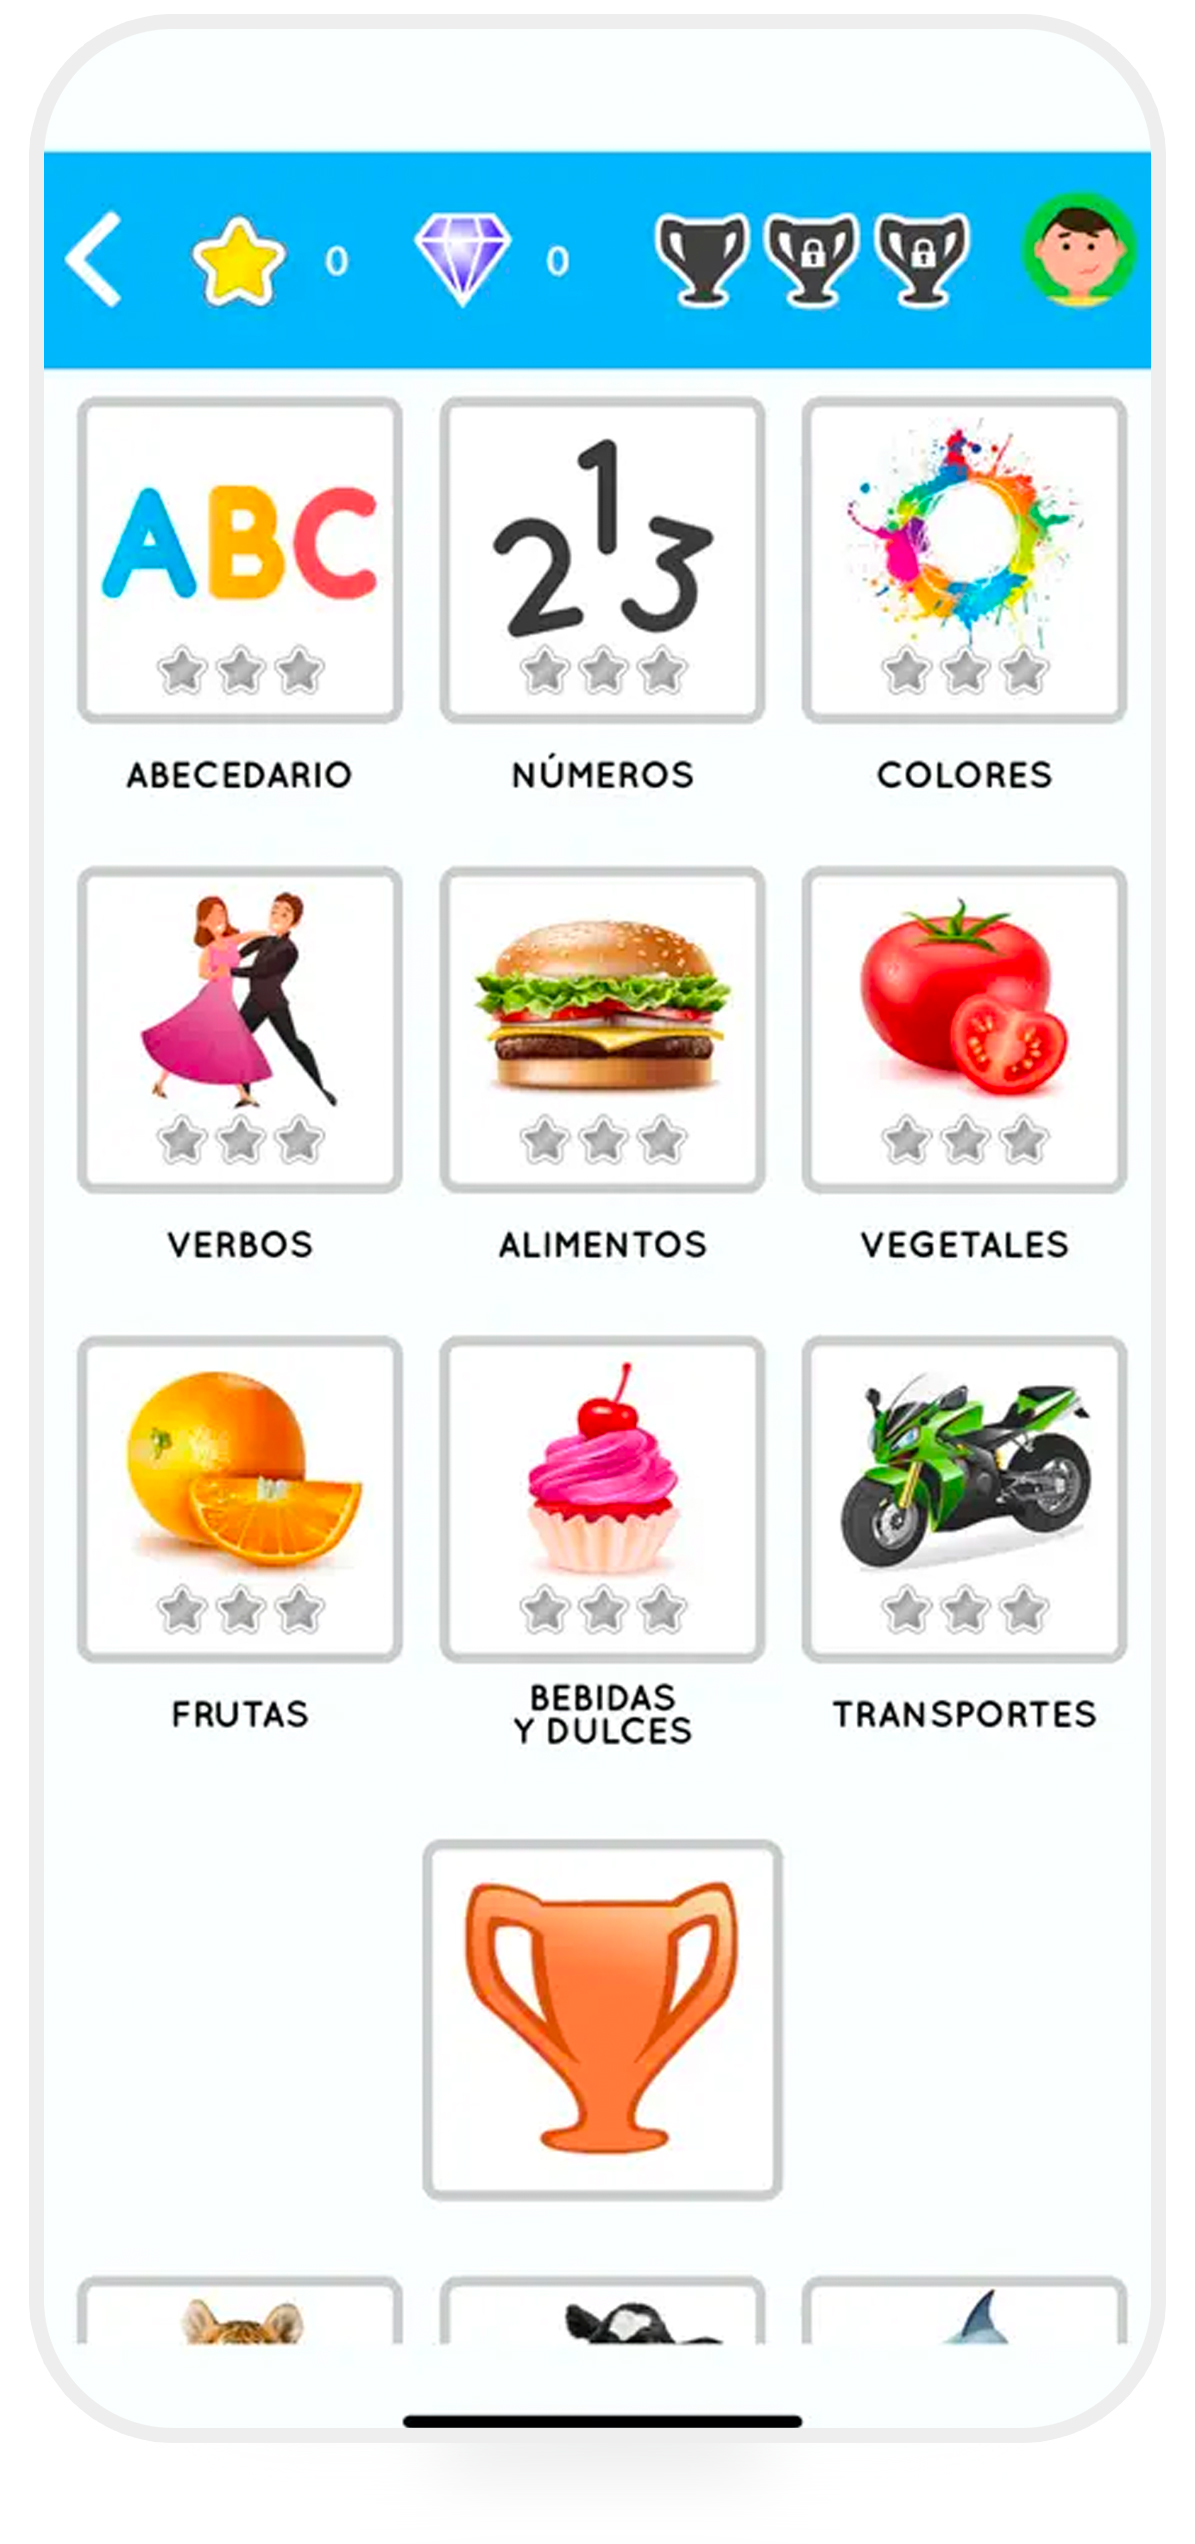 اپلیکیشن Curso de Espanol بهترین اپلیکیشن‌ آموزش زبان اسپانیایی